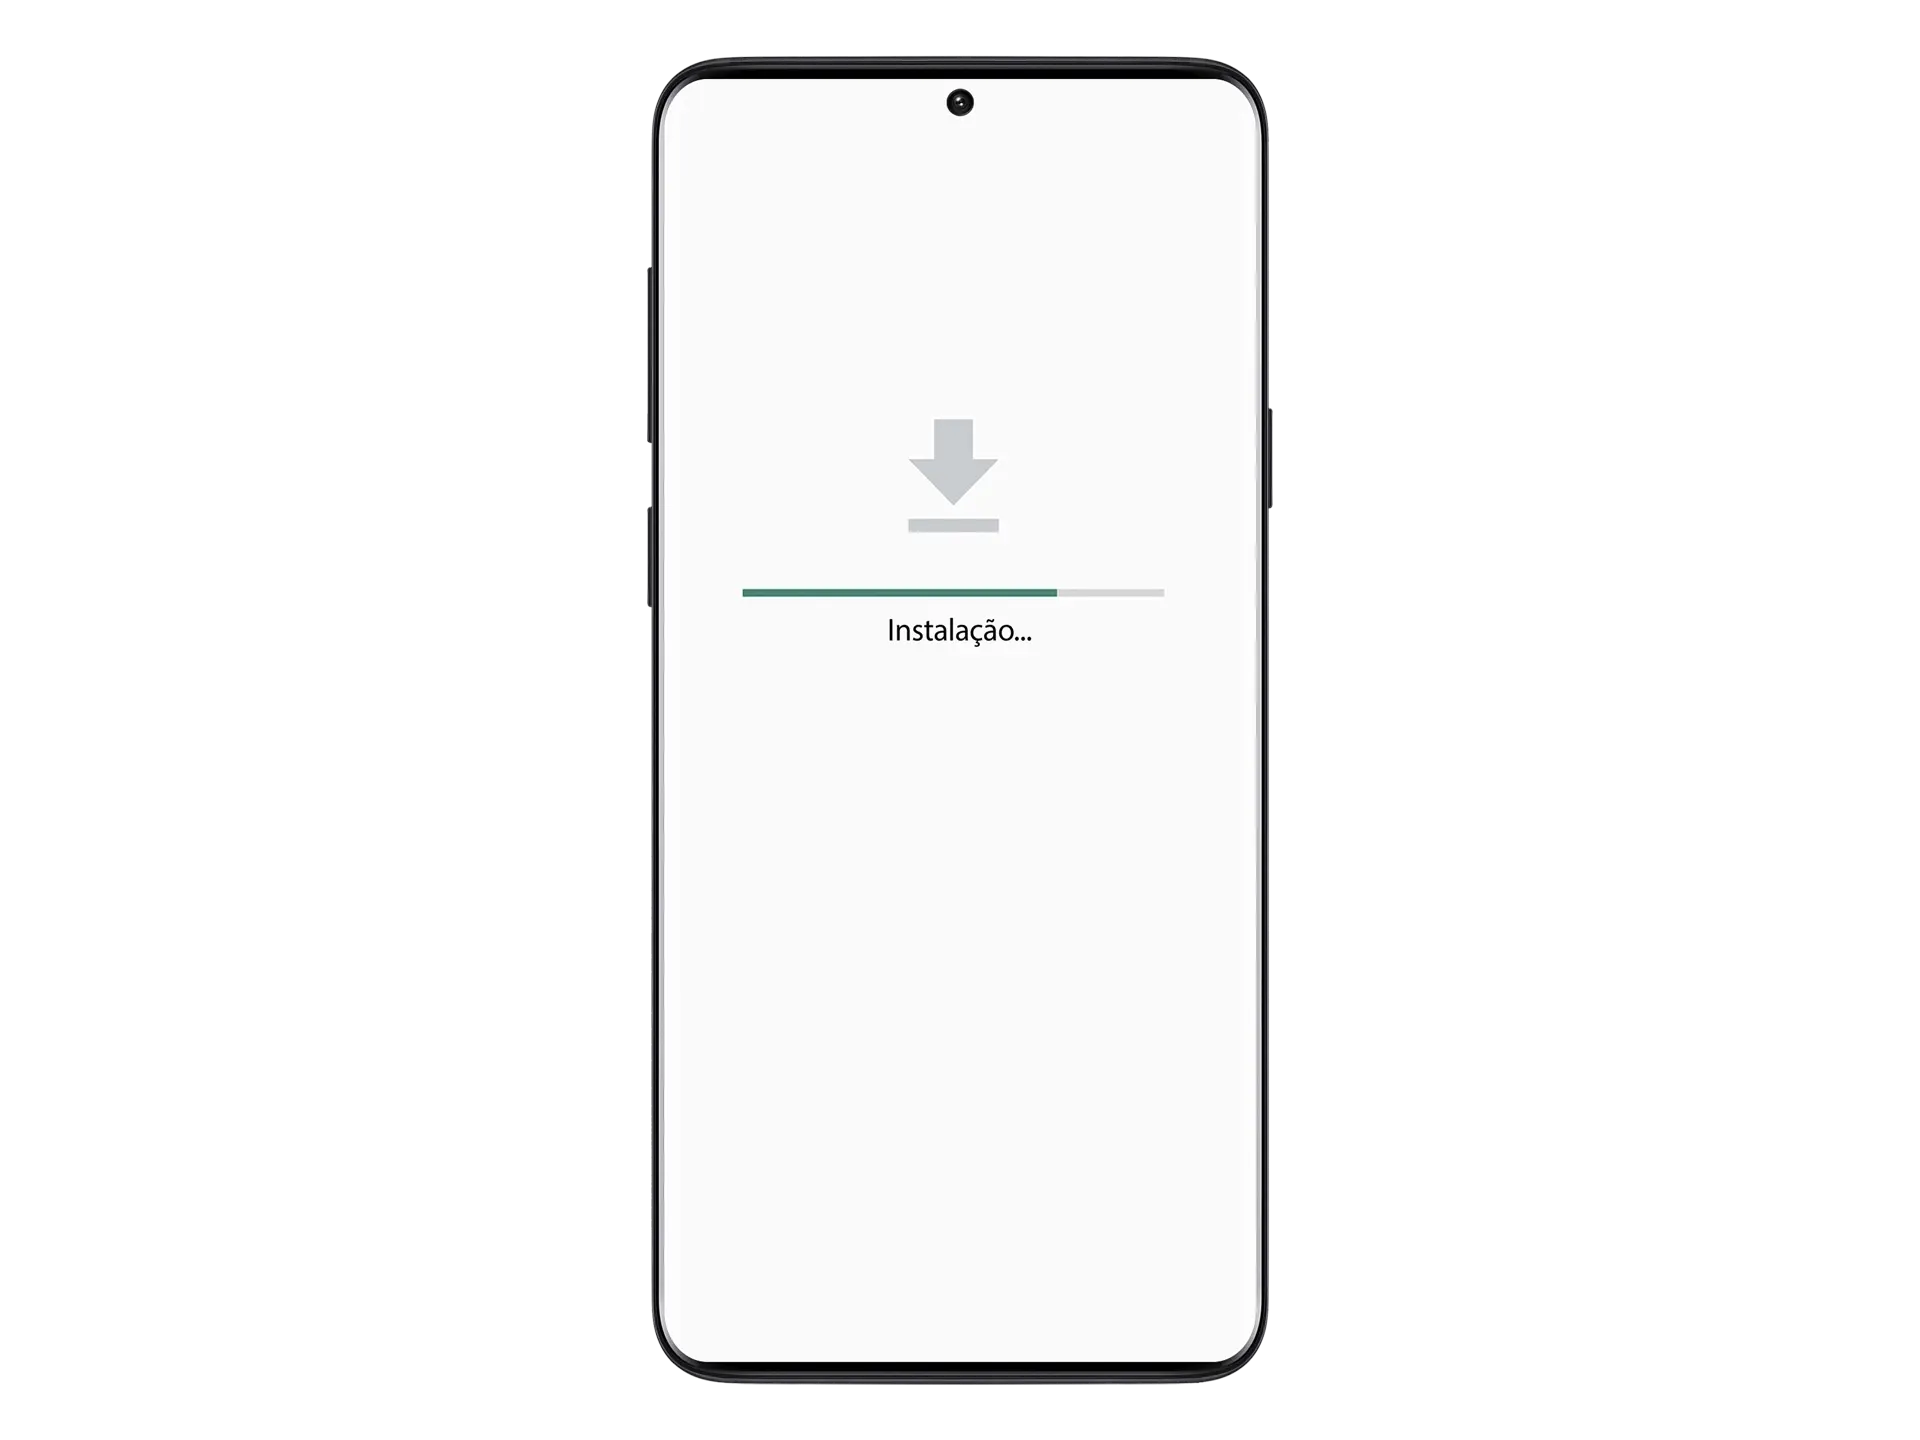 Aguarde a conclusão da instalação do aplicativo 1xSlot em seu dispositivo Android.